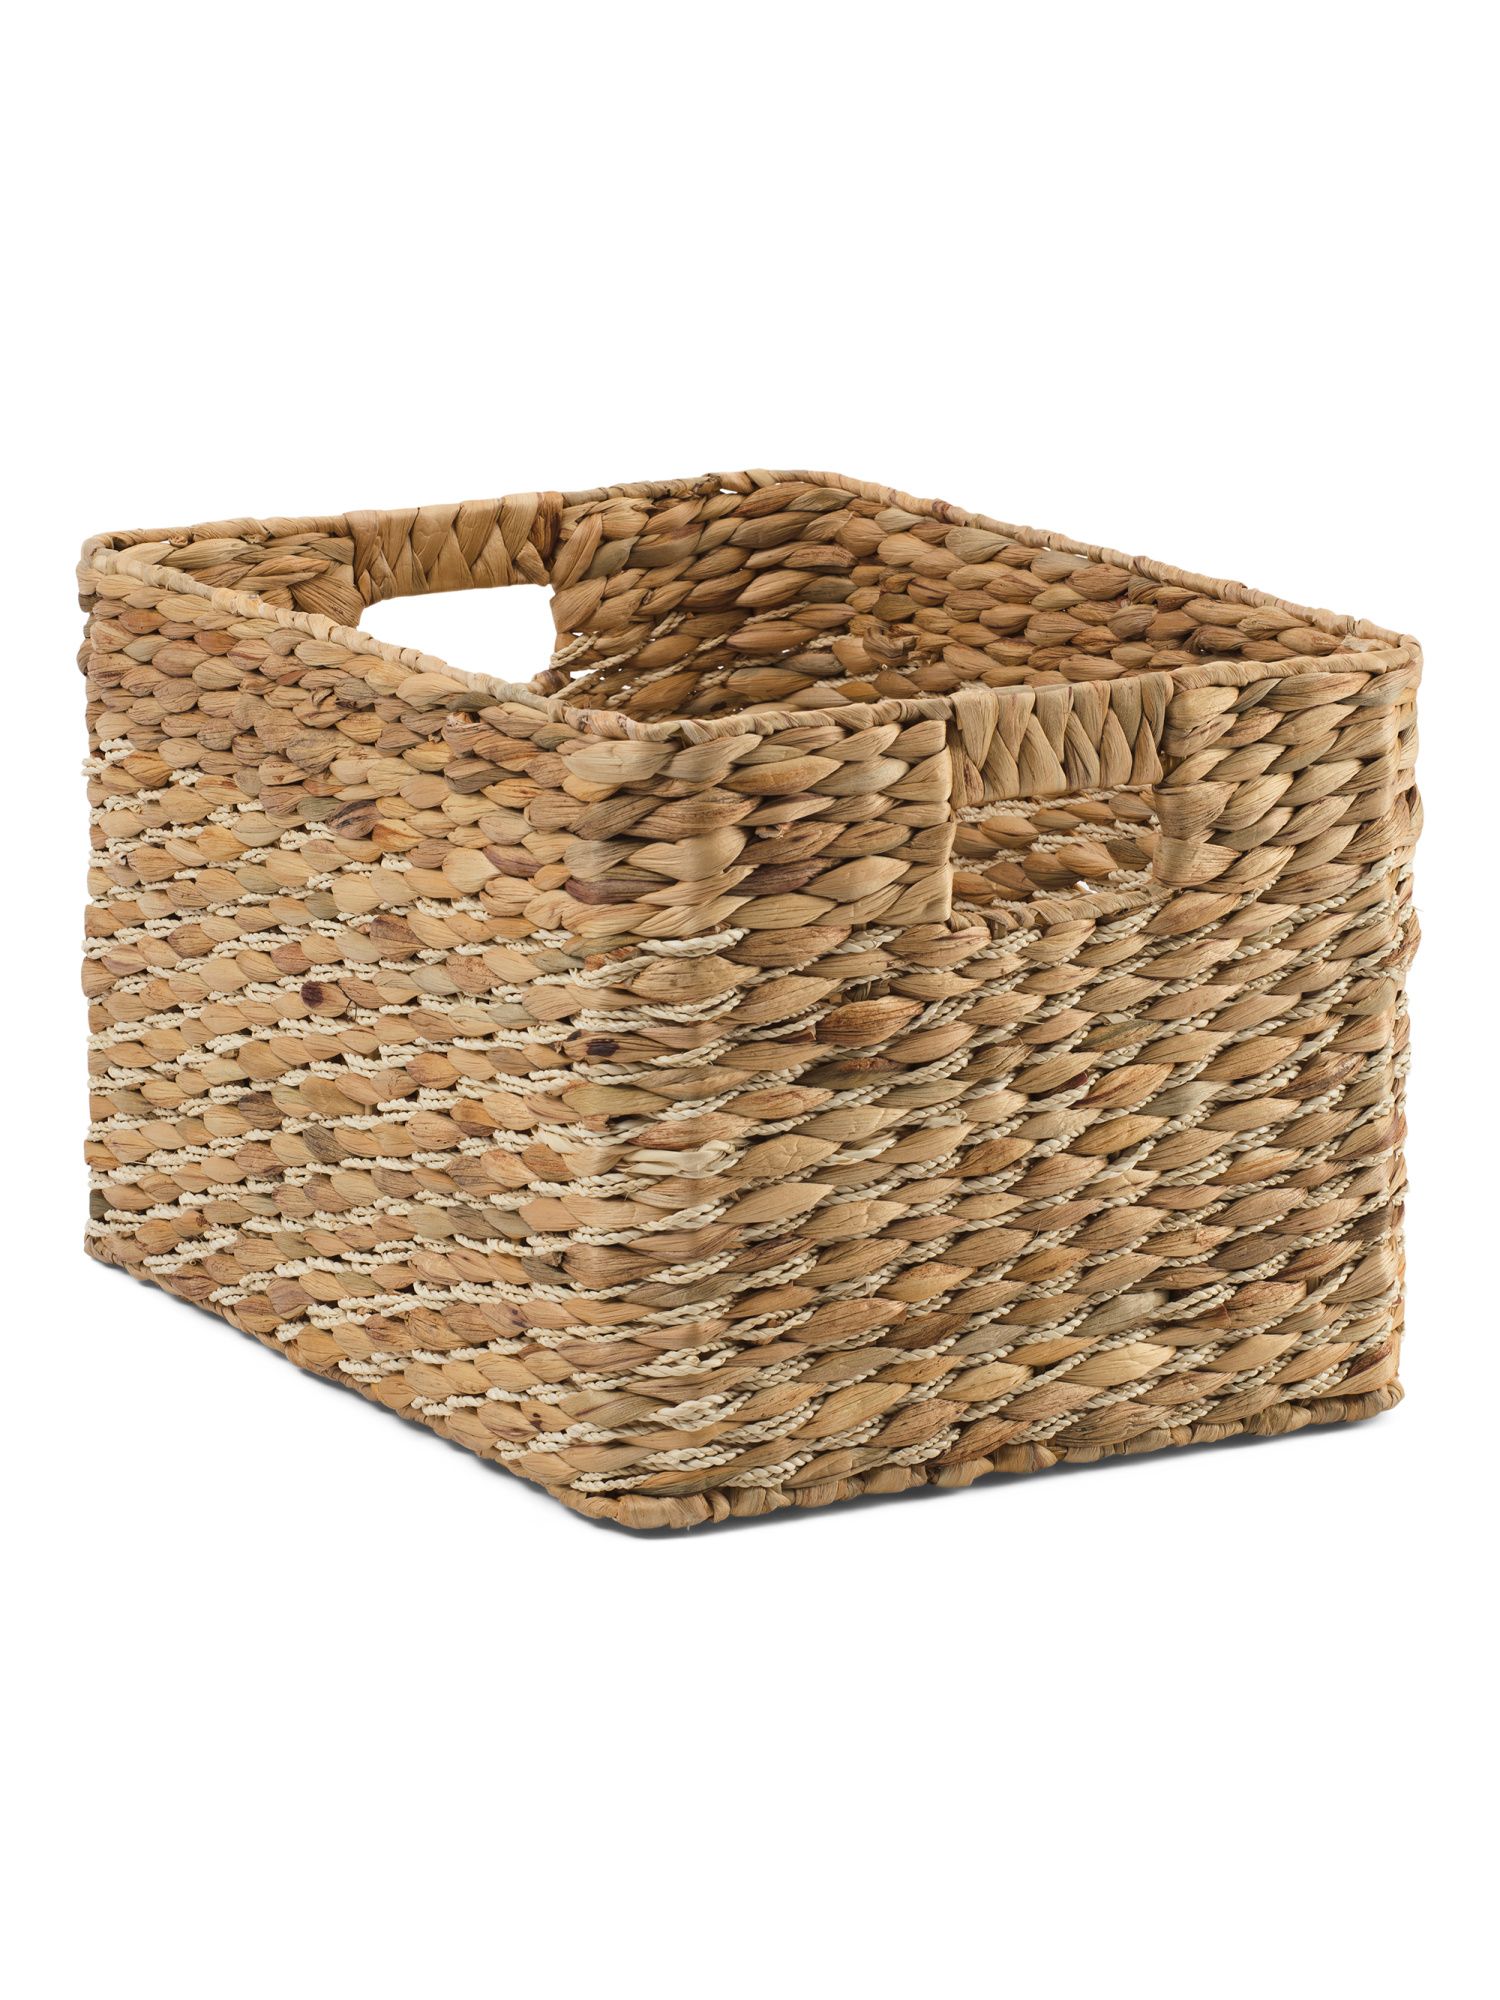 16in Medium Rectangular Palm Leaf Storage Basket | TJ Maxx